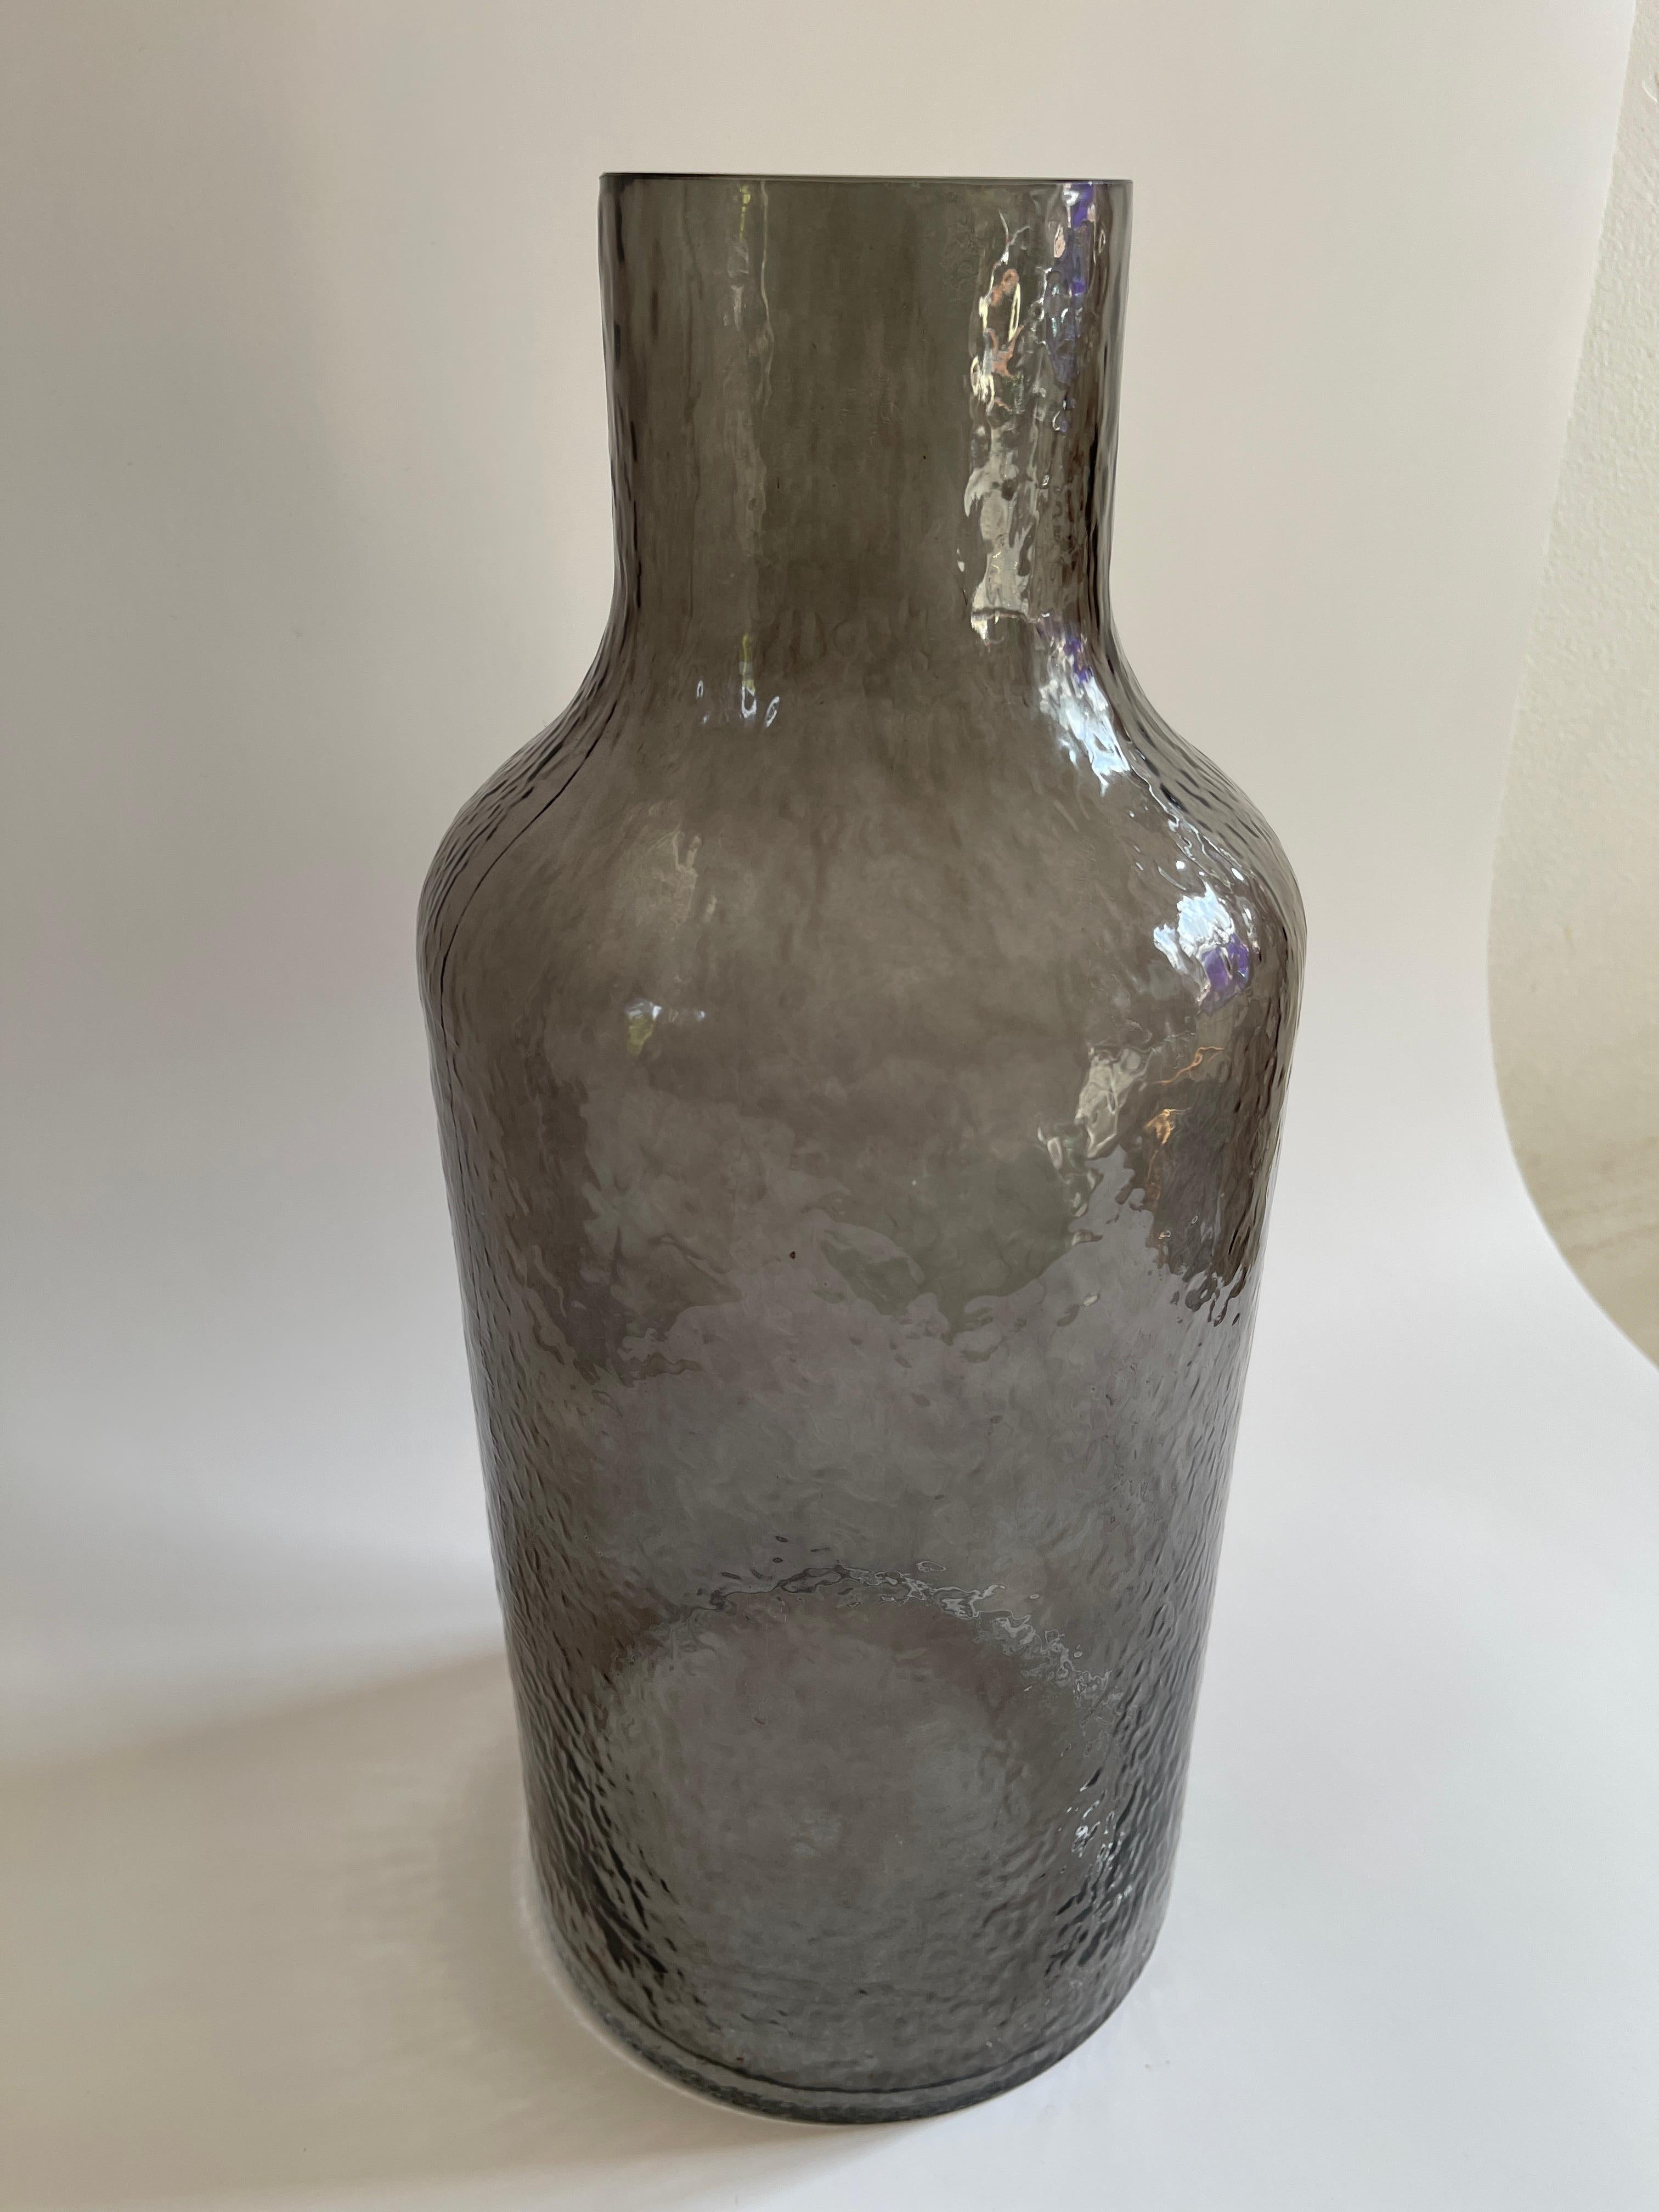 Monumental vase moderne danois en forme de bouteille en verre fumé à la texture ondulée,  Le verre texturé filtre la lumière, créant un effet merveilleux.